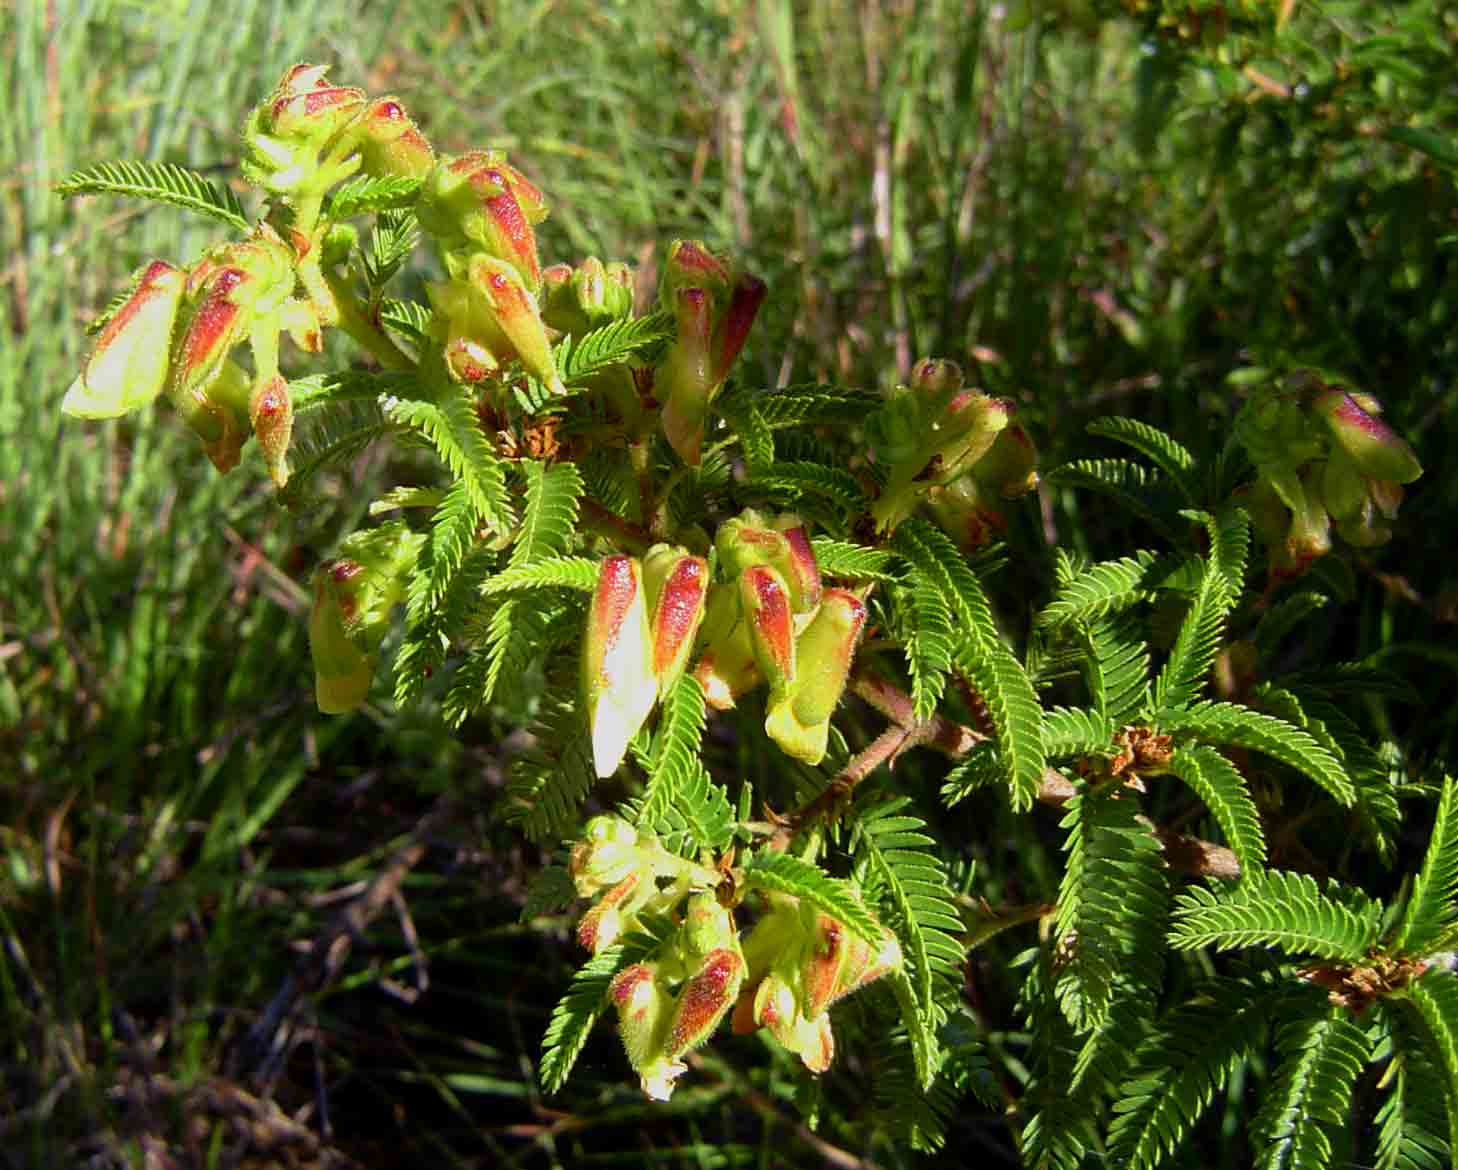 Kotschya thymodora subsp. thymodora